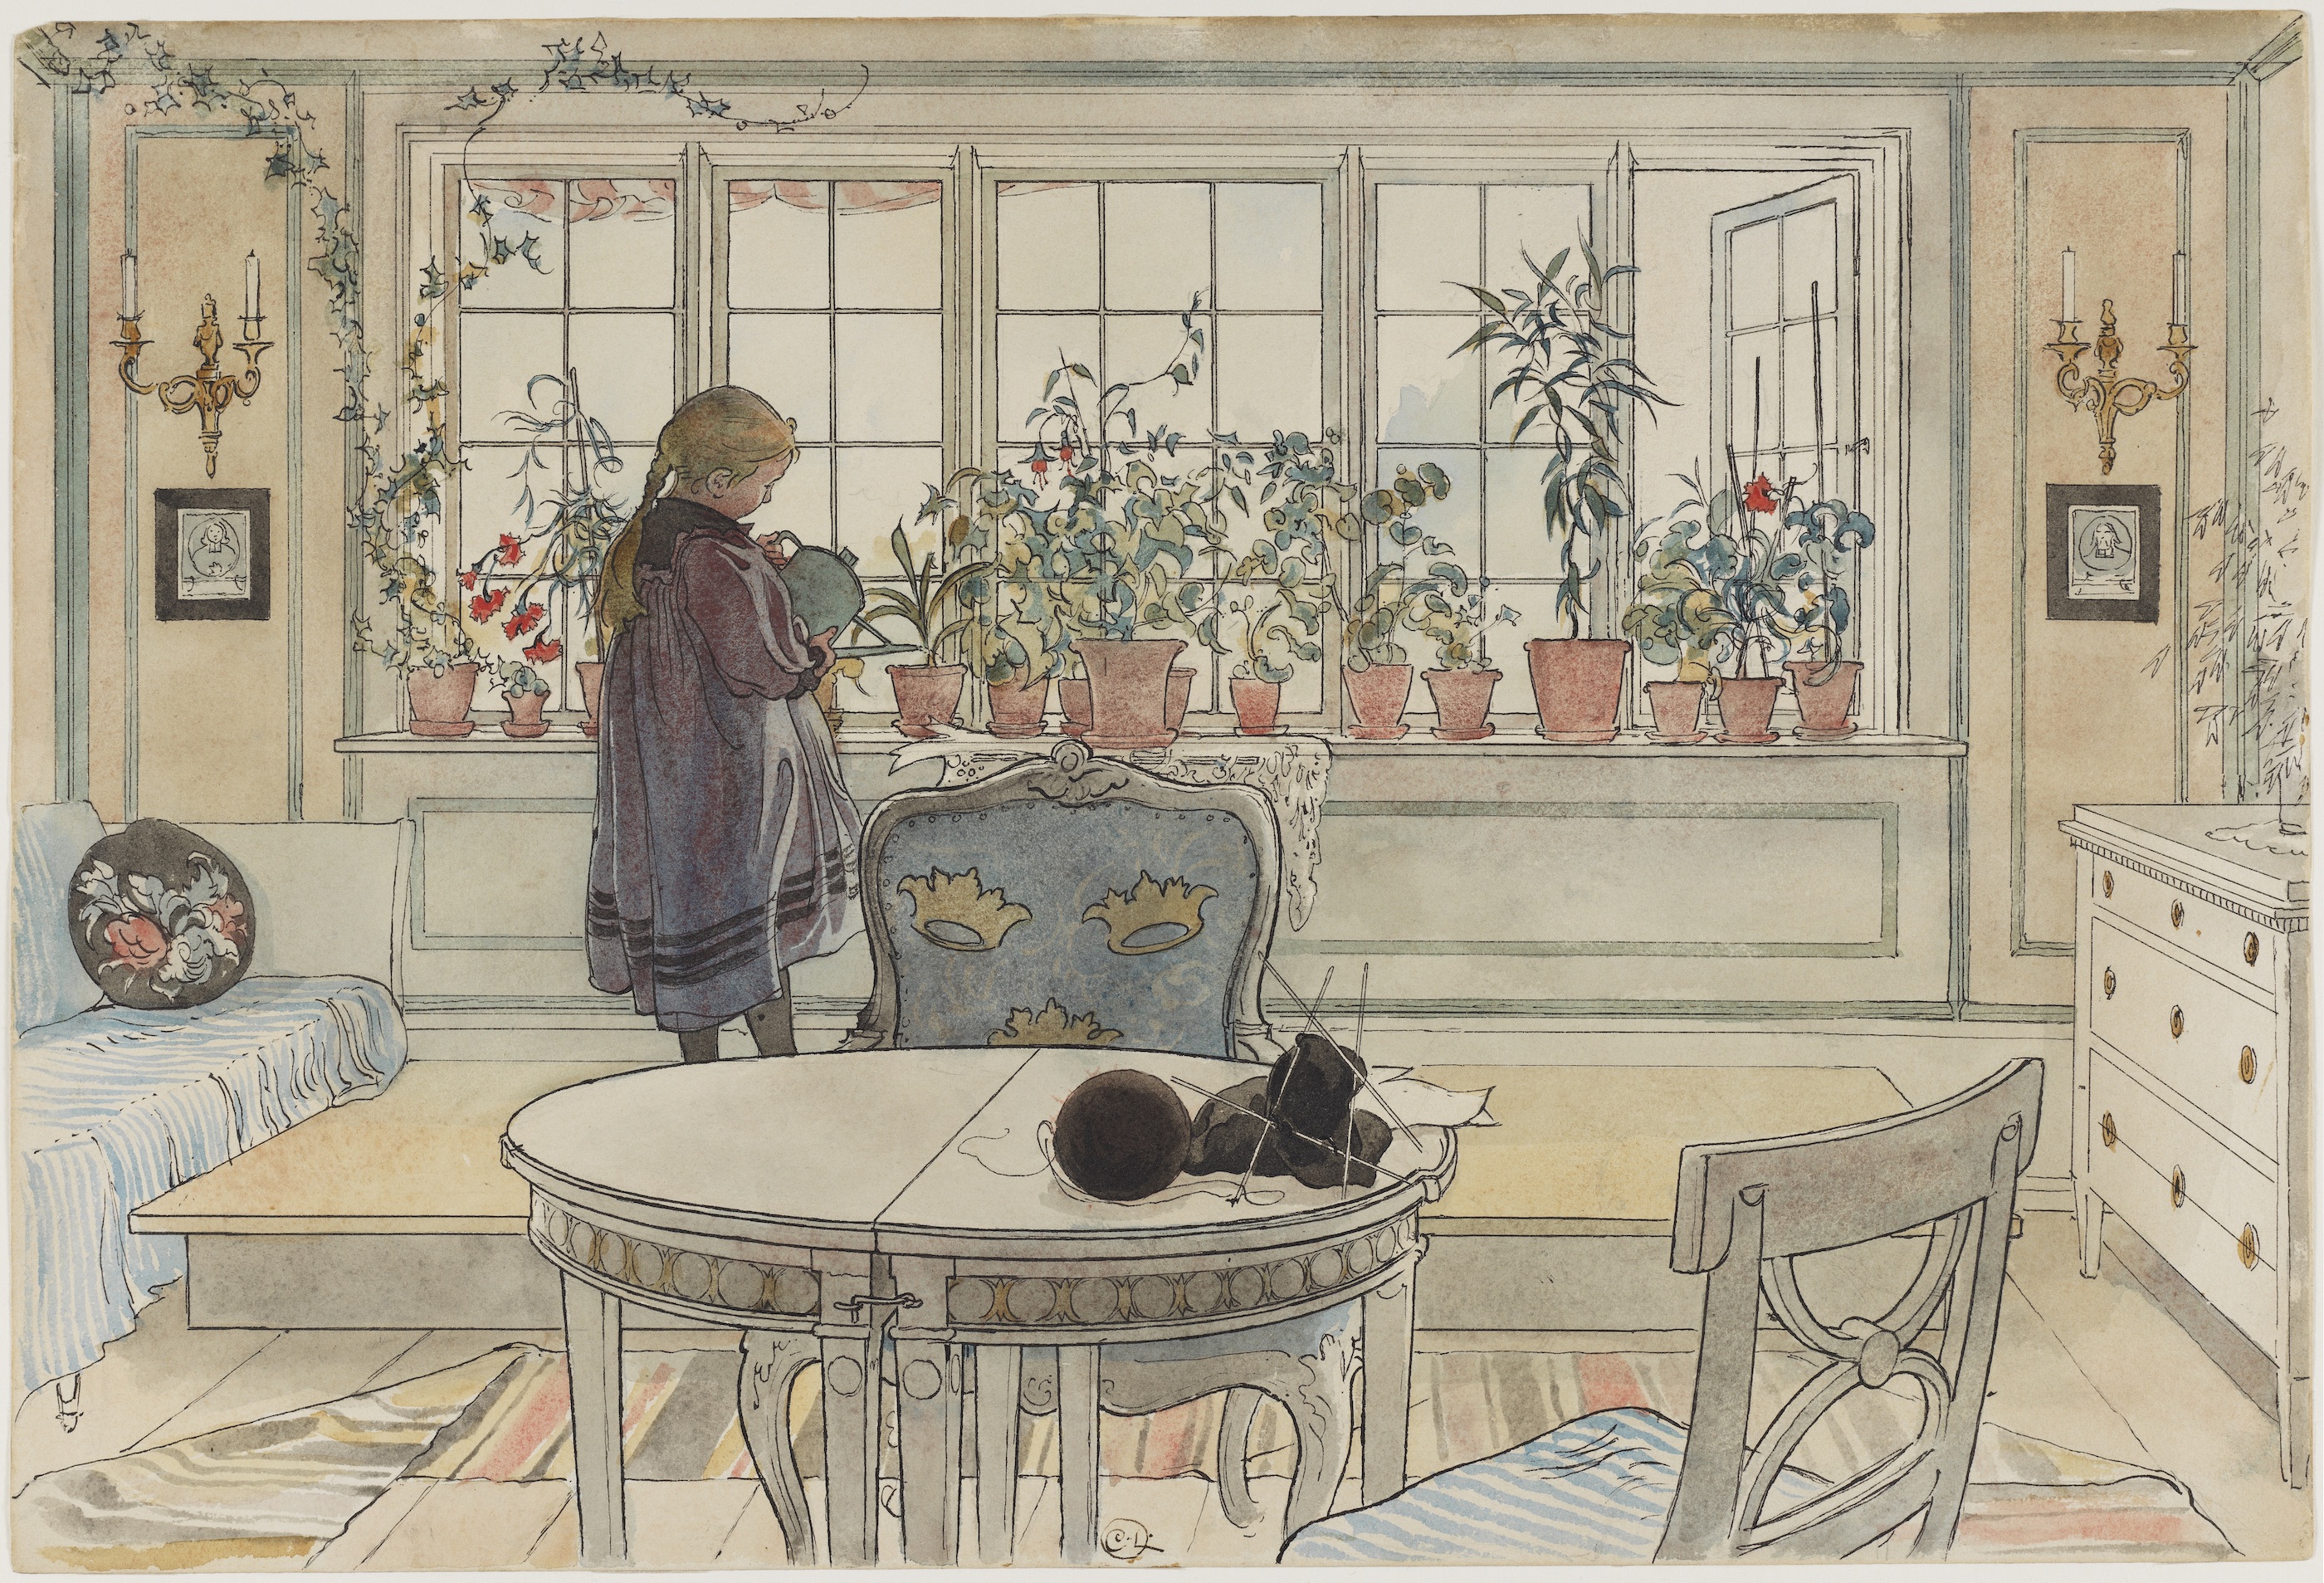 Virágok az ablakpárkányon - az "Egy otthon" című műből by Carl Larsson - 1900 - 32 x 43 cm 